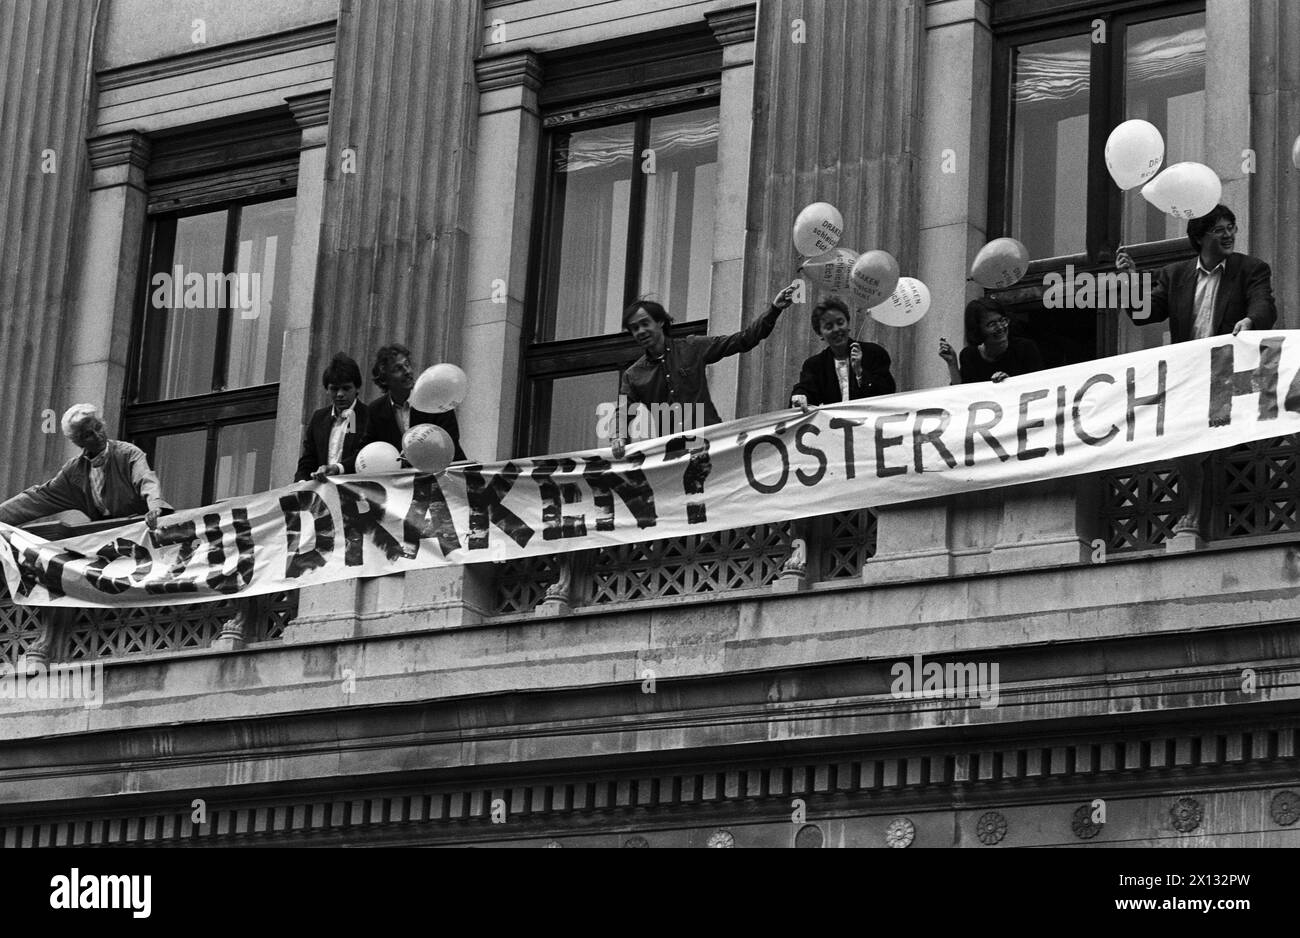 Am 31. Mai 1988 demonstrierten die Österreichischen Grünen in Wien gegen den Kauf der Draken-Abfangen durch die Regierung . Die grünen Abgeordneten Frenda Meissner-Blau (ganz links) und Walter Geyer (3. Links) nahmen Teil. - 19880531 PD0016 - Rechteinfo: Rechte verwaltet (RM) Stockfoto